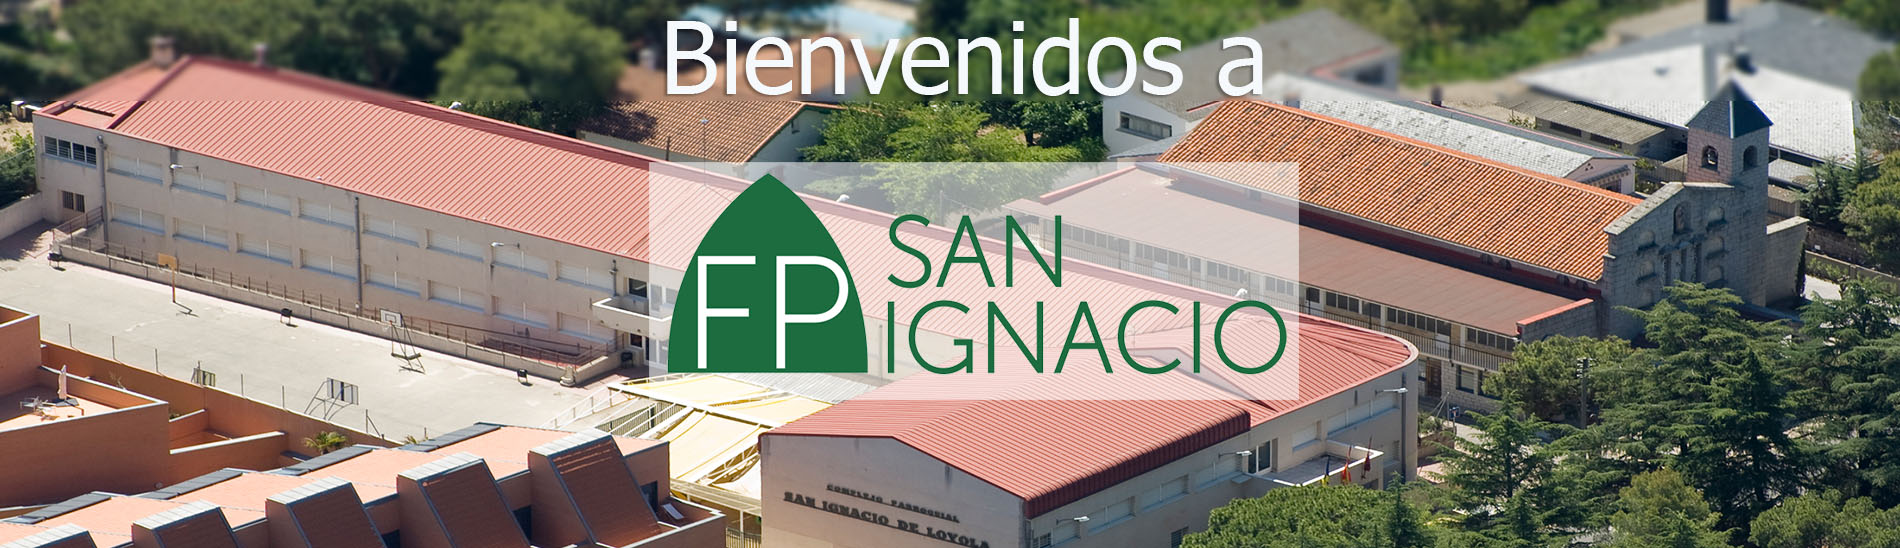 biebvenido a FP San Ignacio